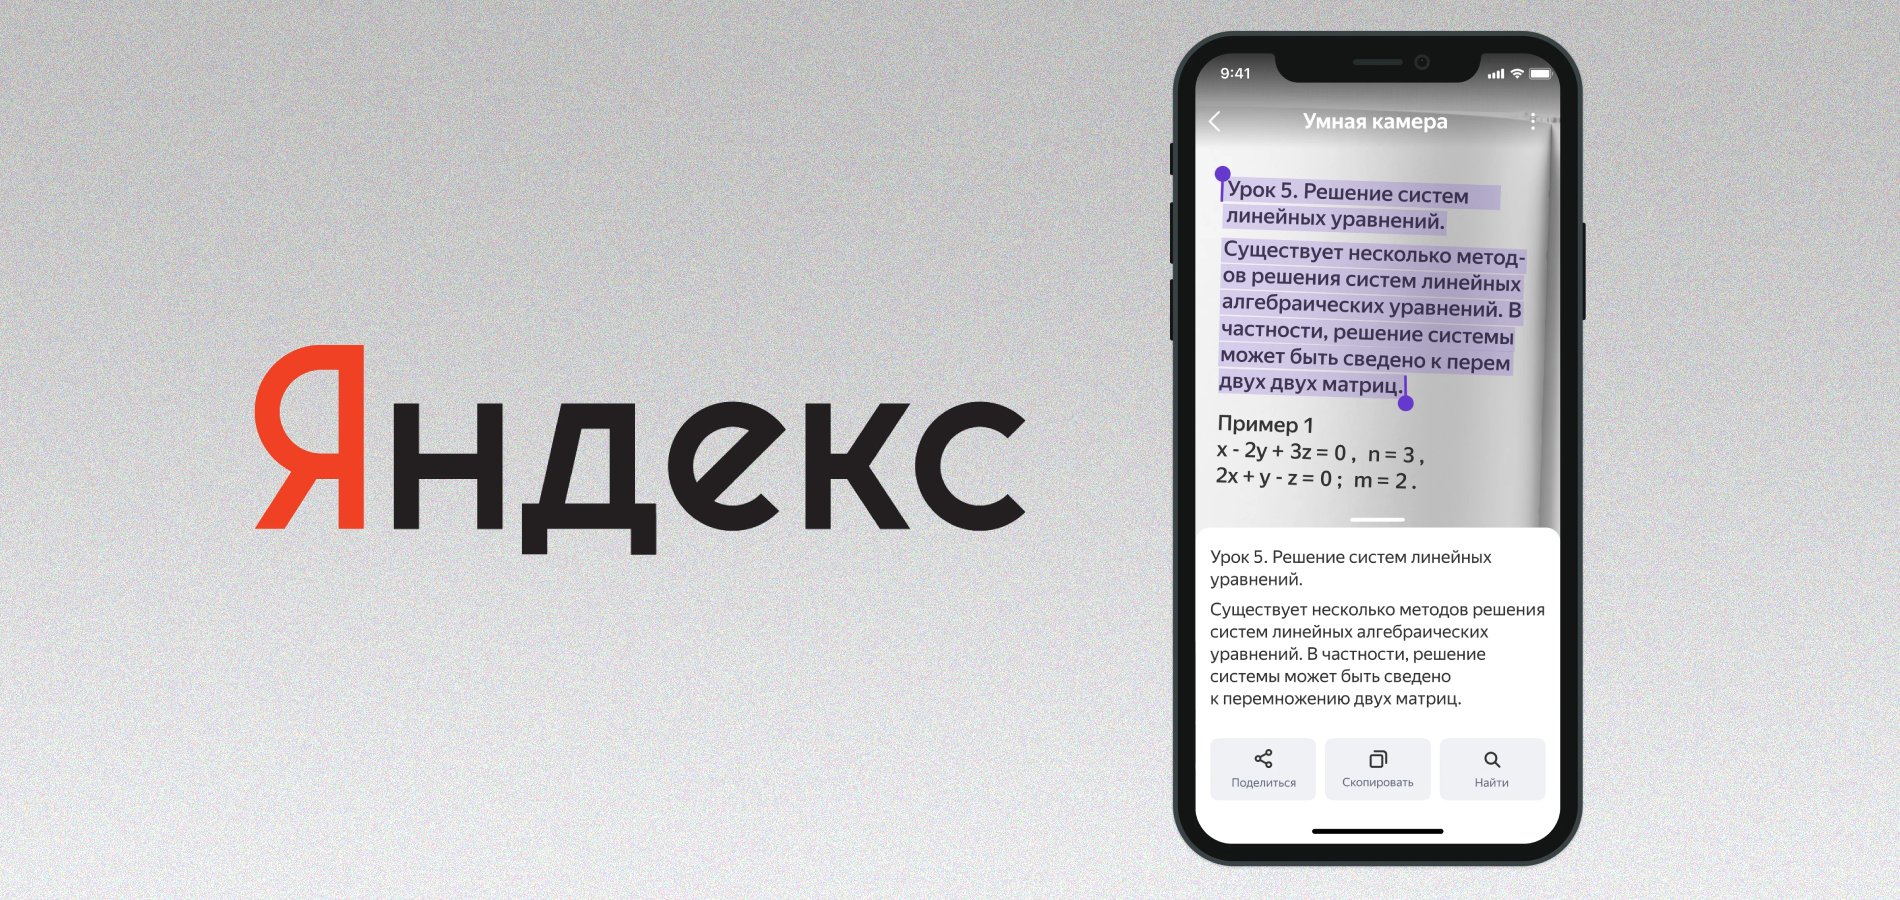 Умная камера Яндекса научилась распознавать текст - Новости Timeweb  Community